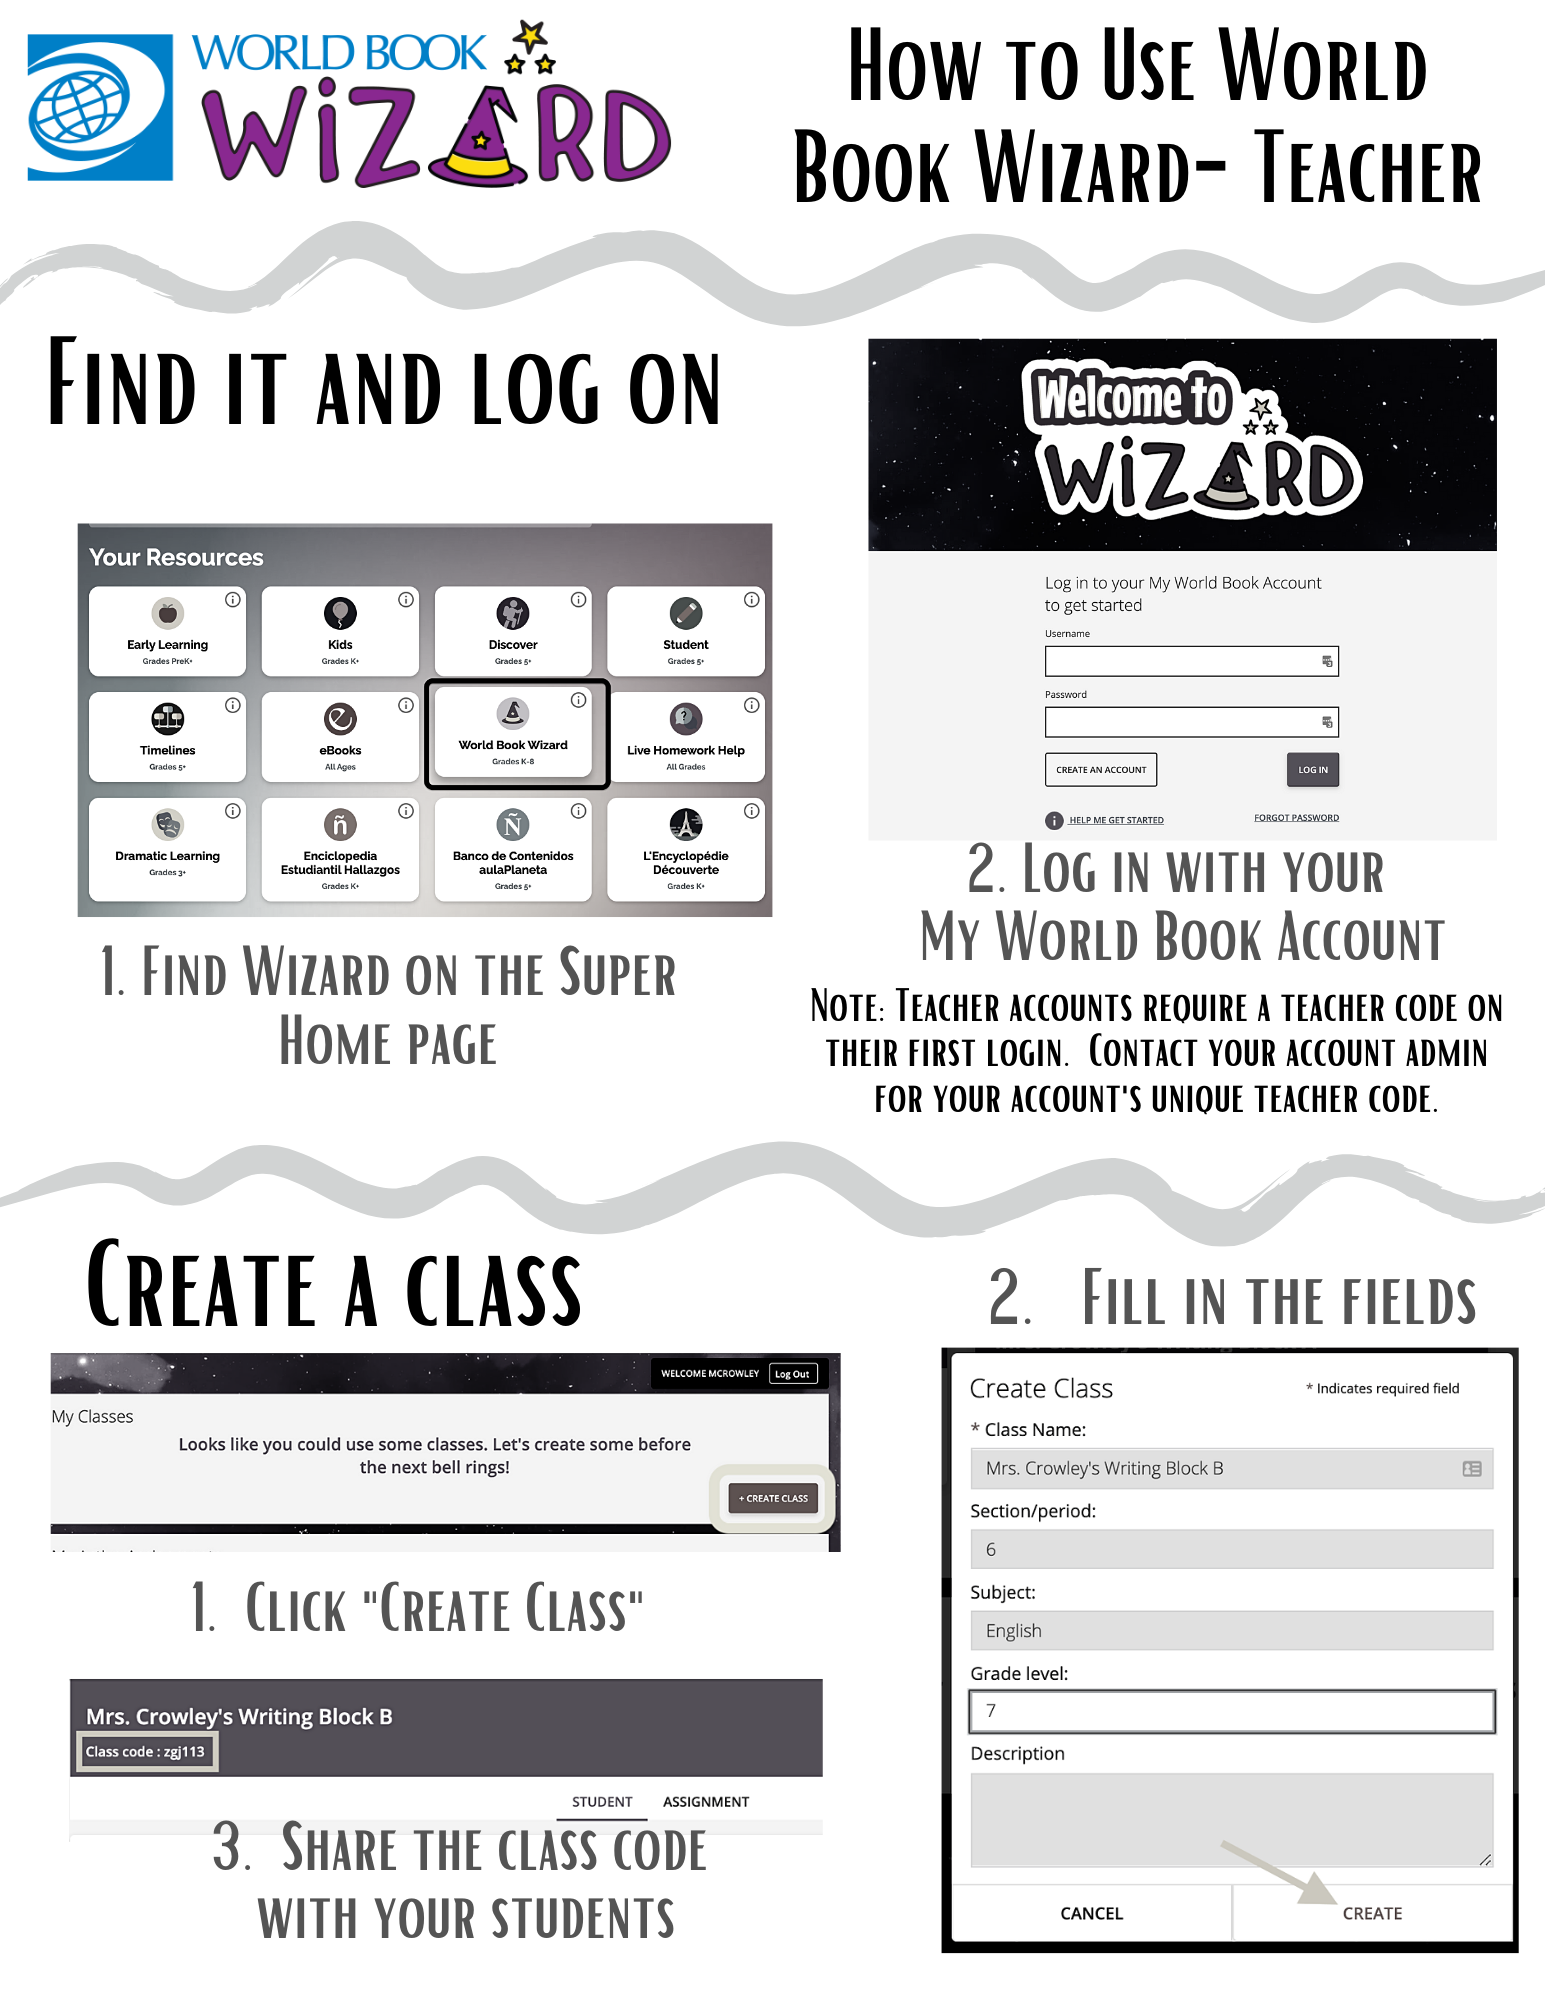 Use Wizard Teacher Account B&W